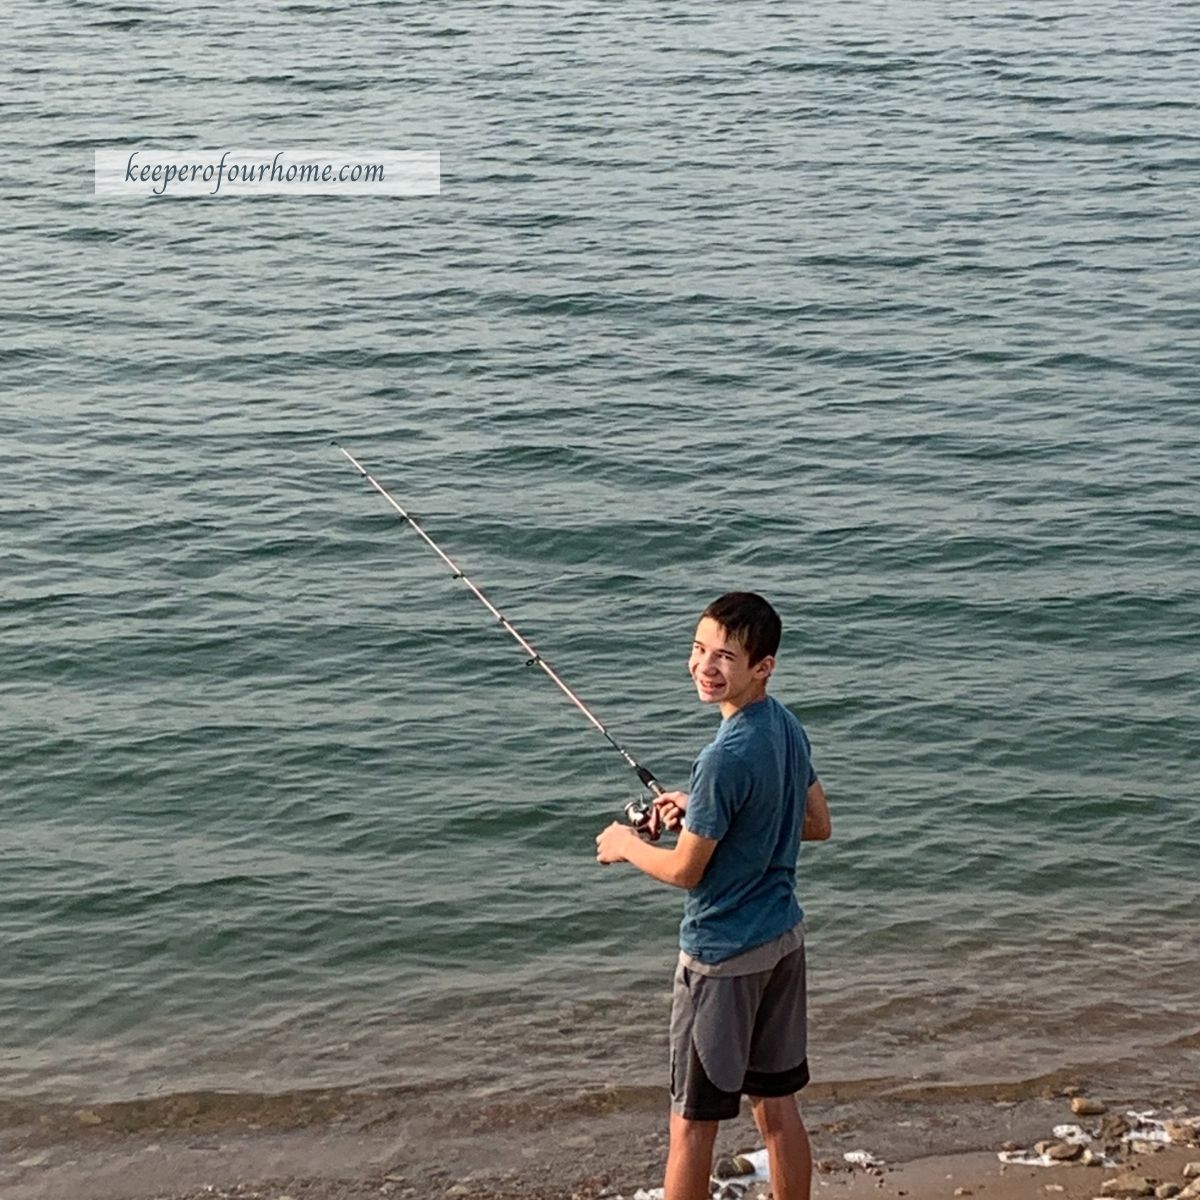 teenage boy fishing